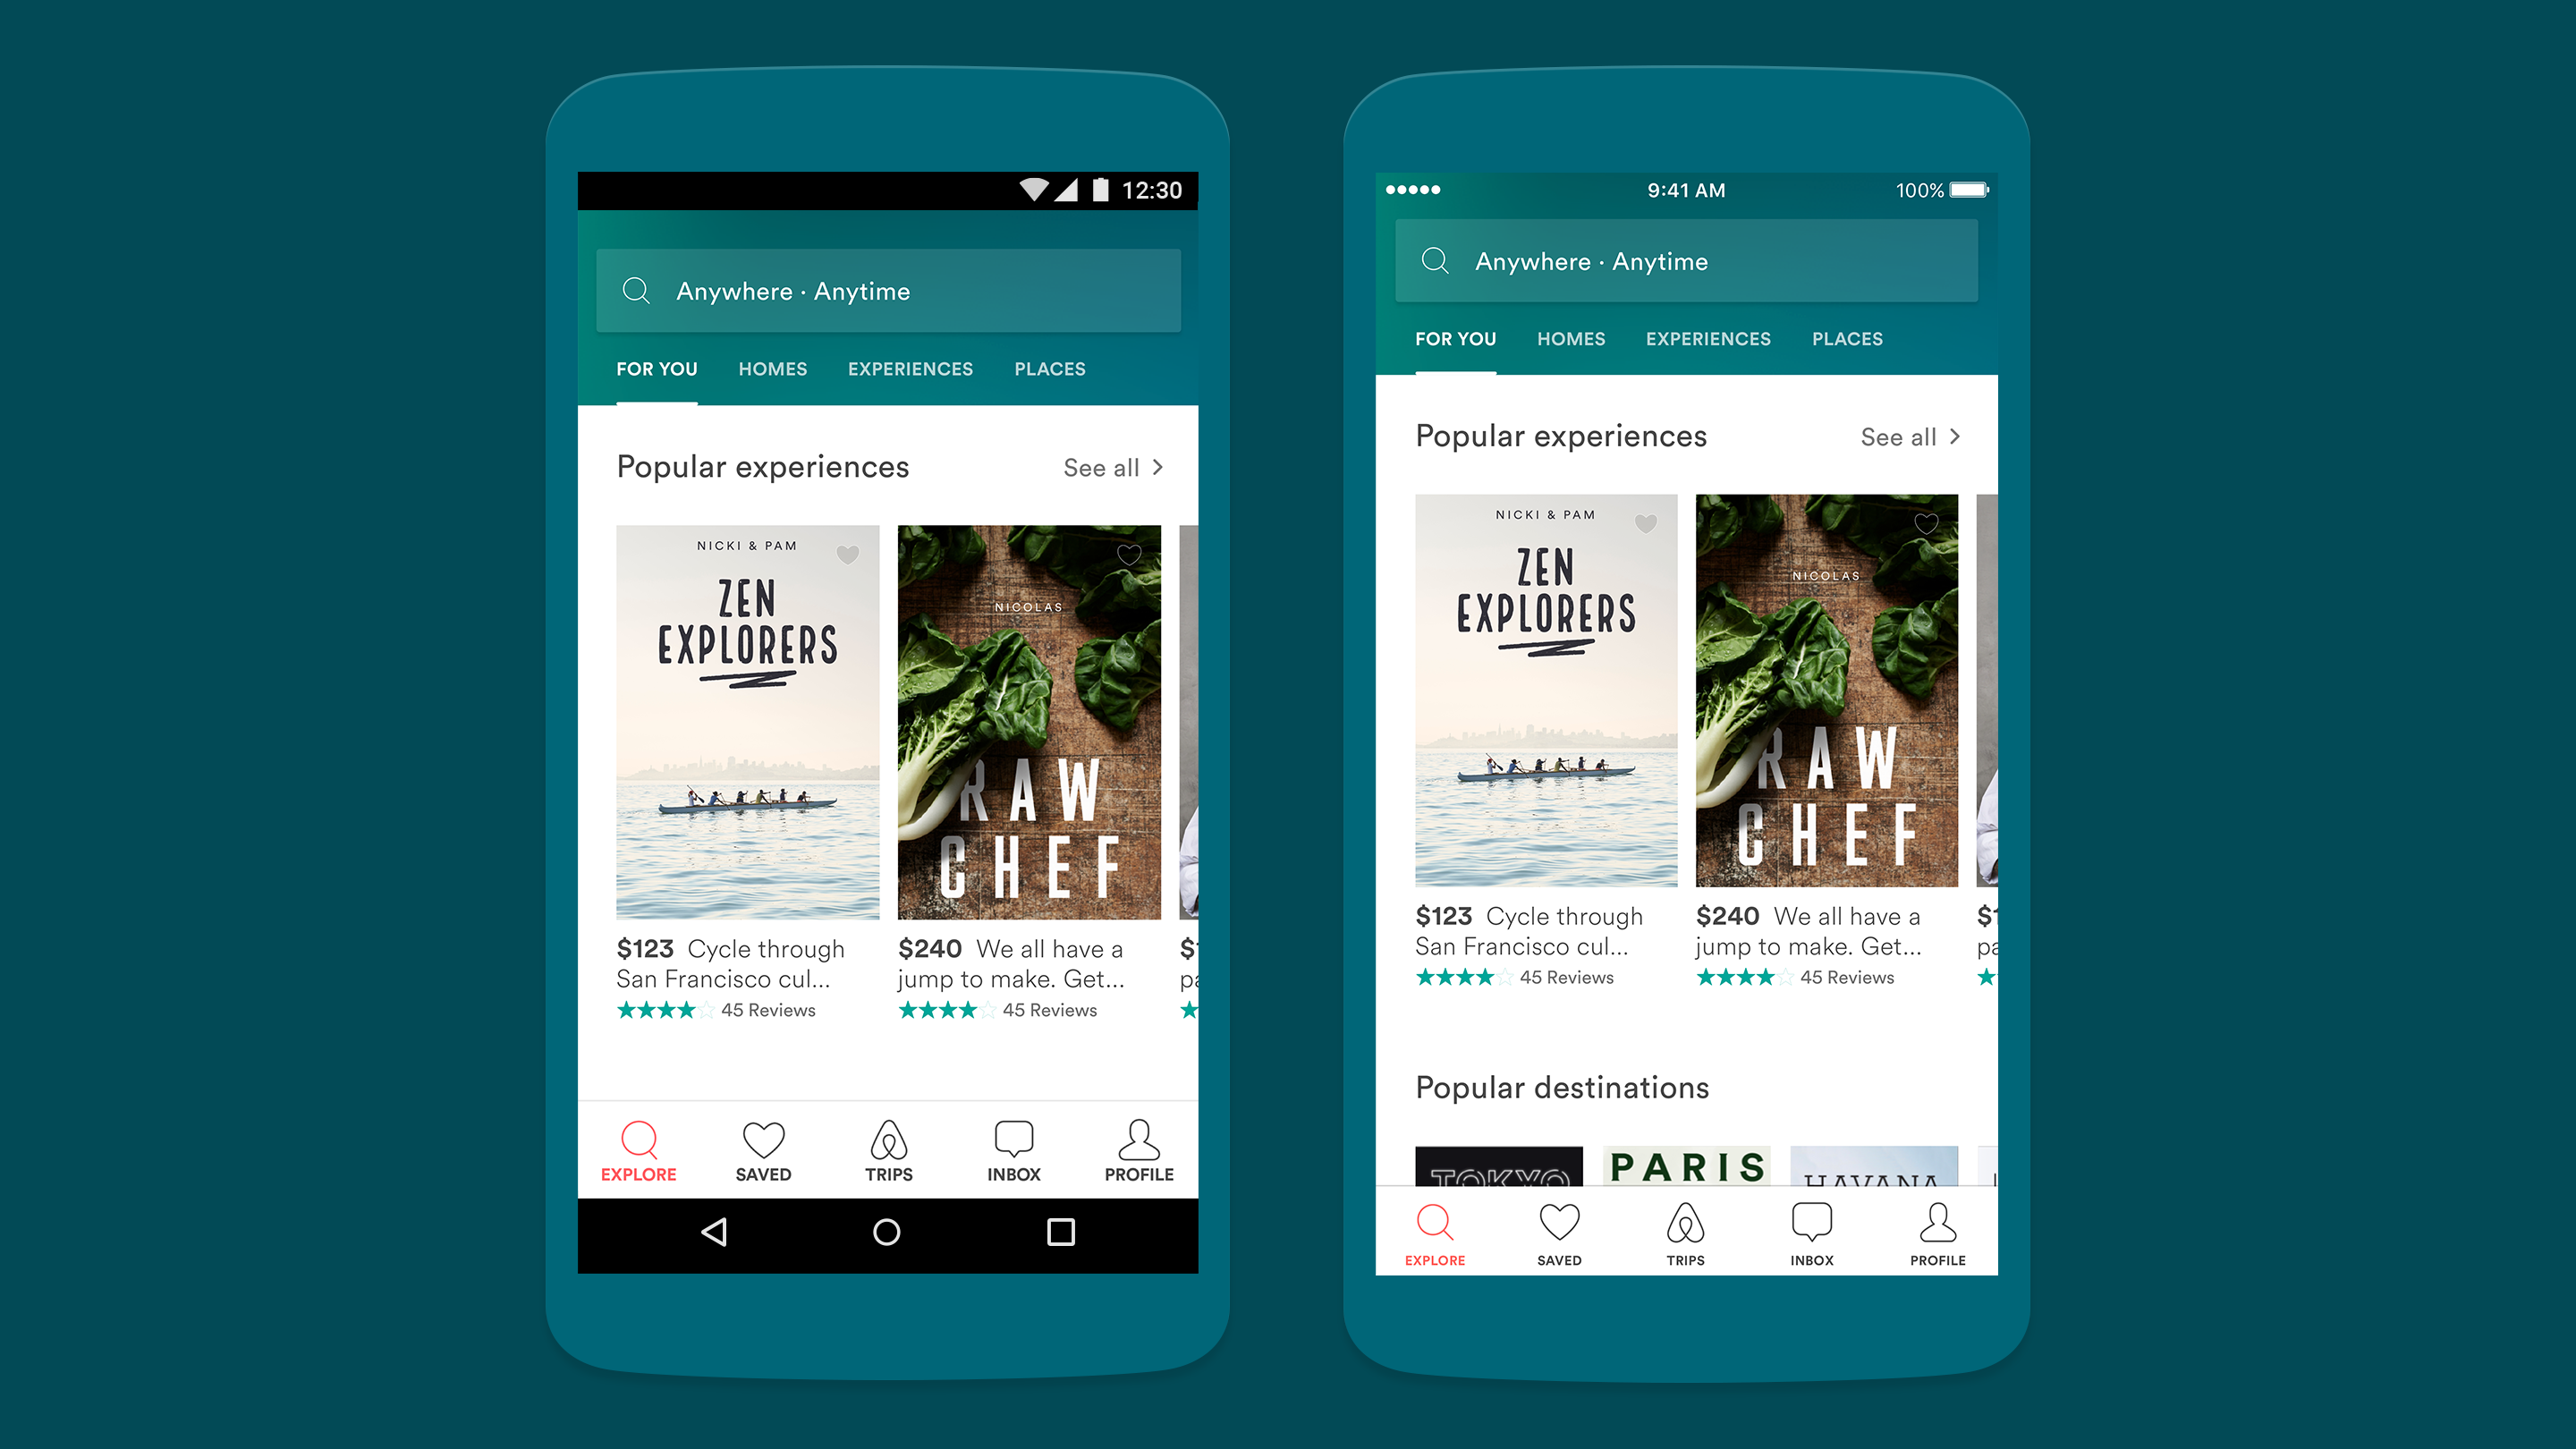 Konsistensi tampilan navigasi aplikasi Airbnb, dibuat sama baik di iOS dan Android agar user experience terasa nyaman.